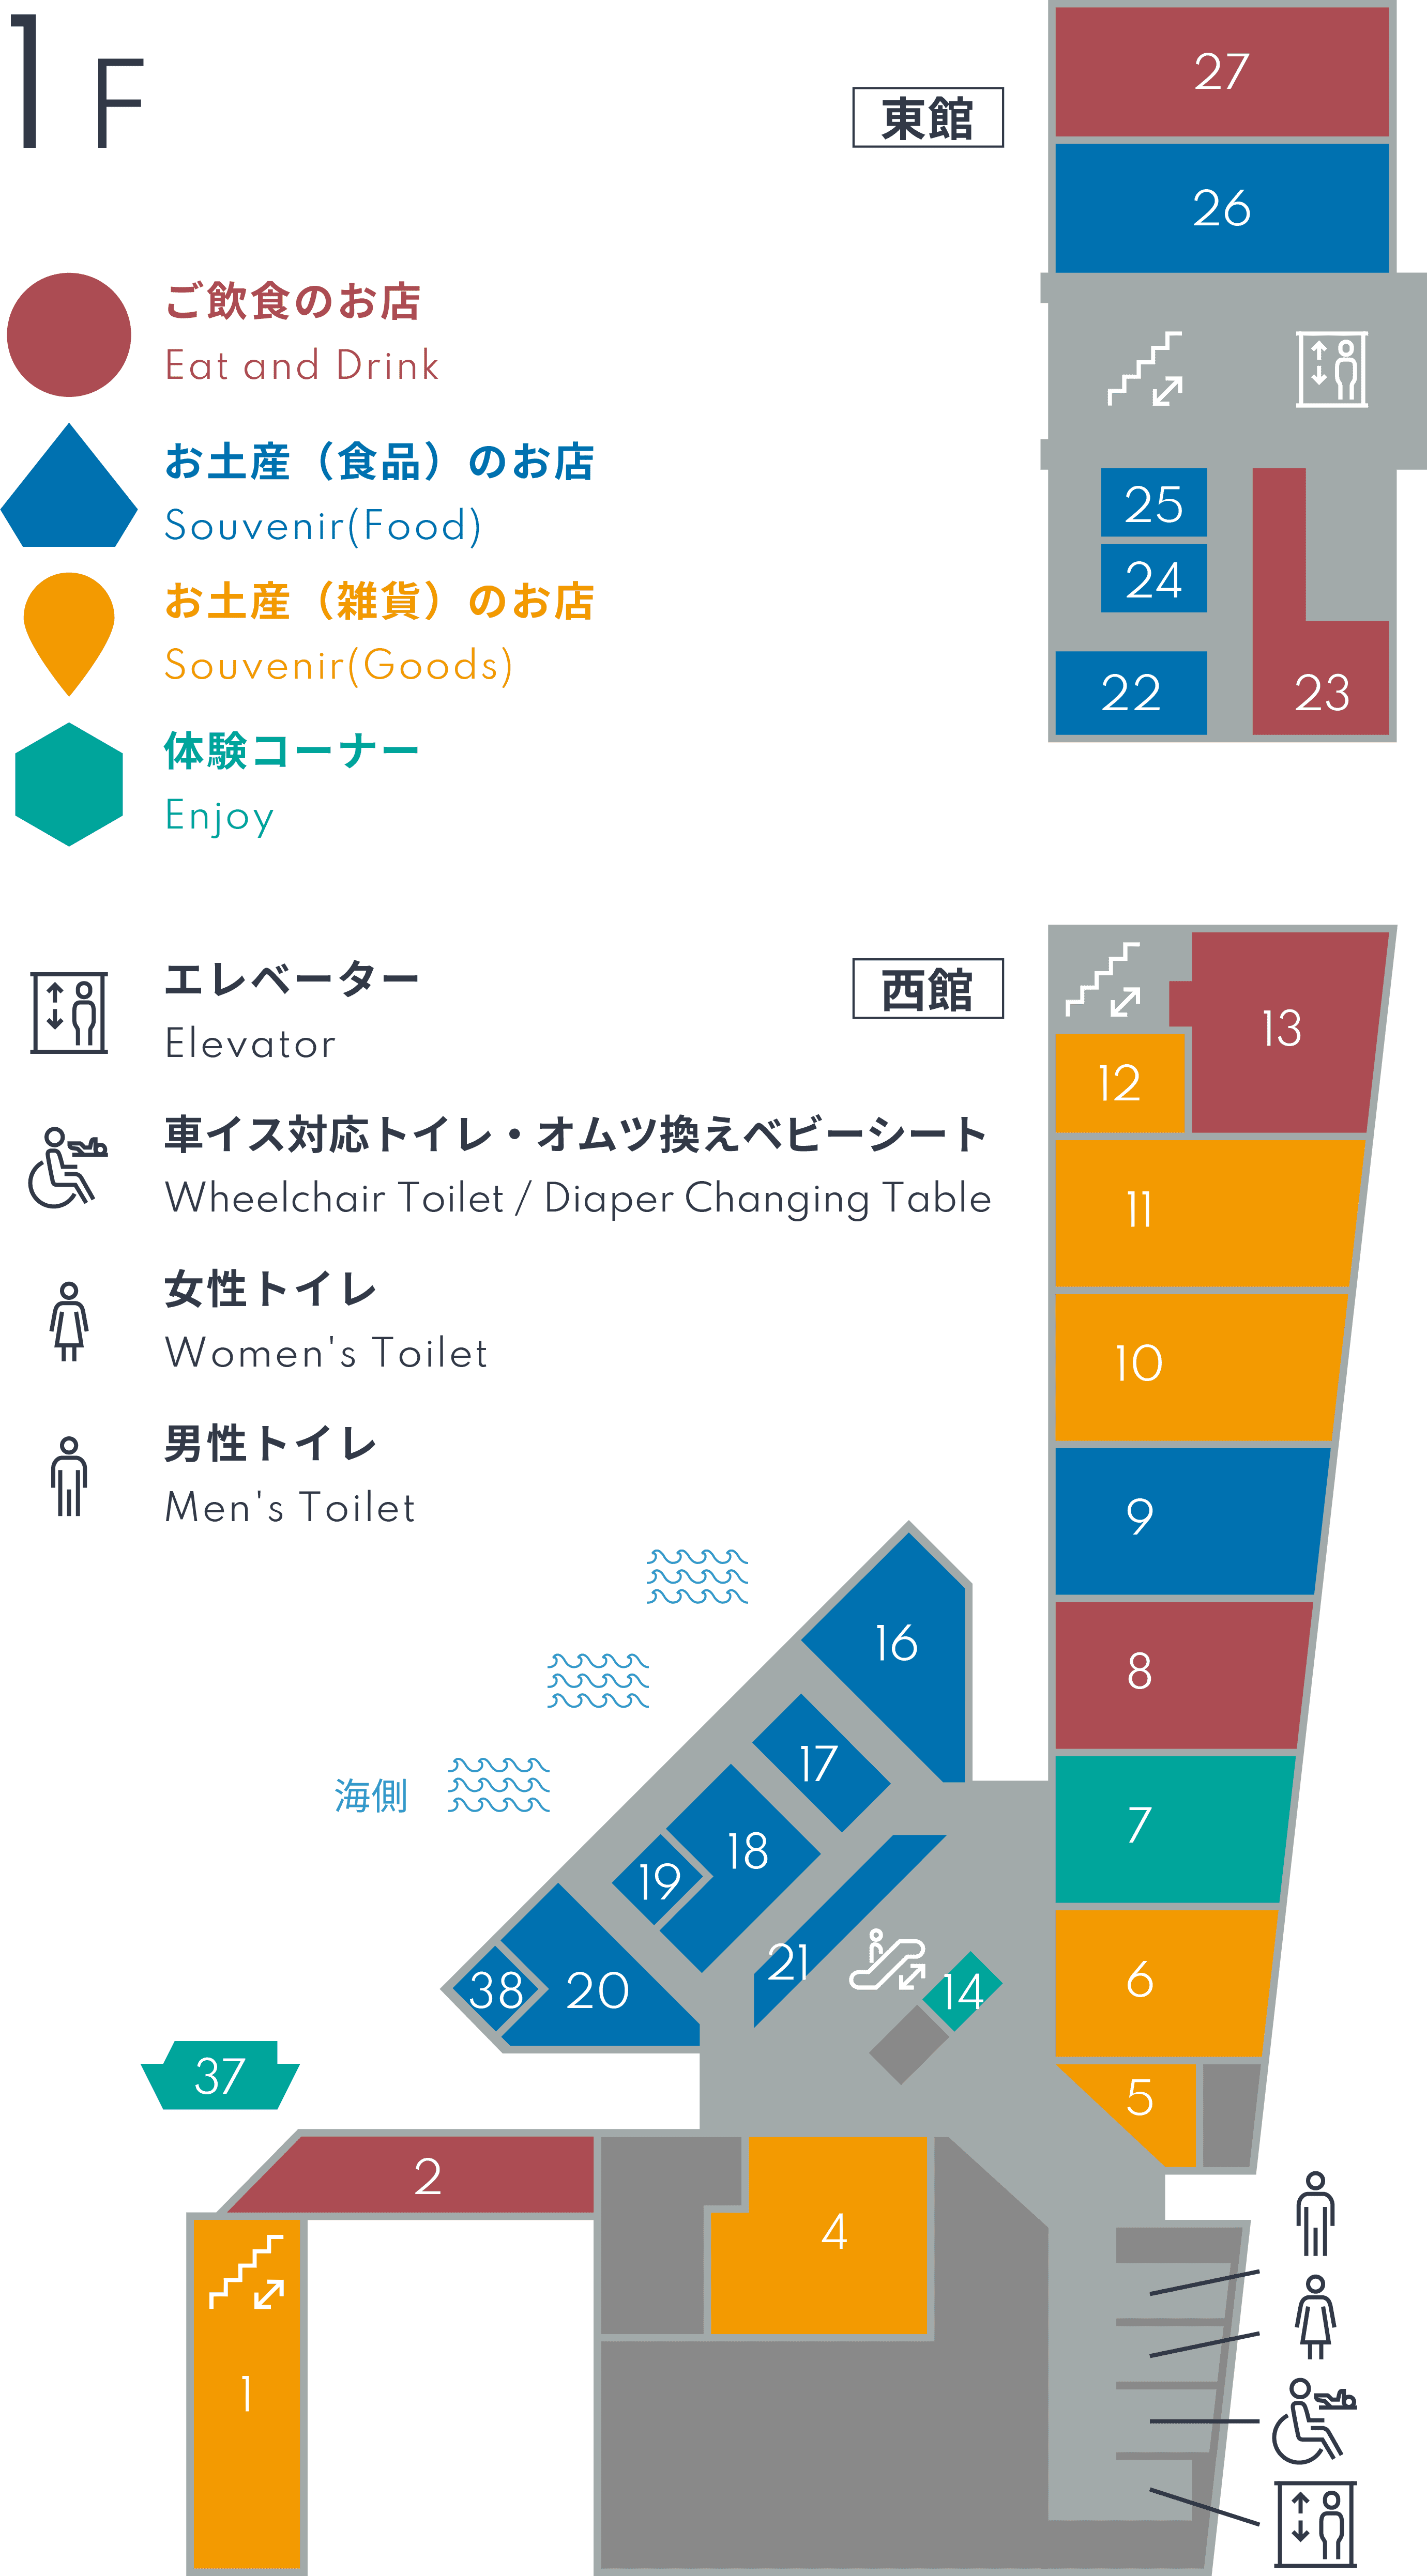 Floor Guide - 1F